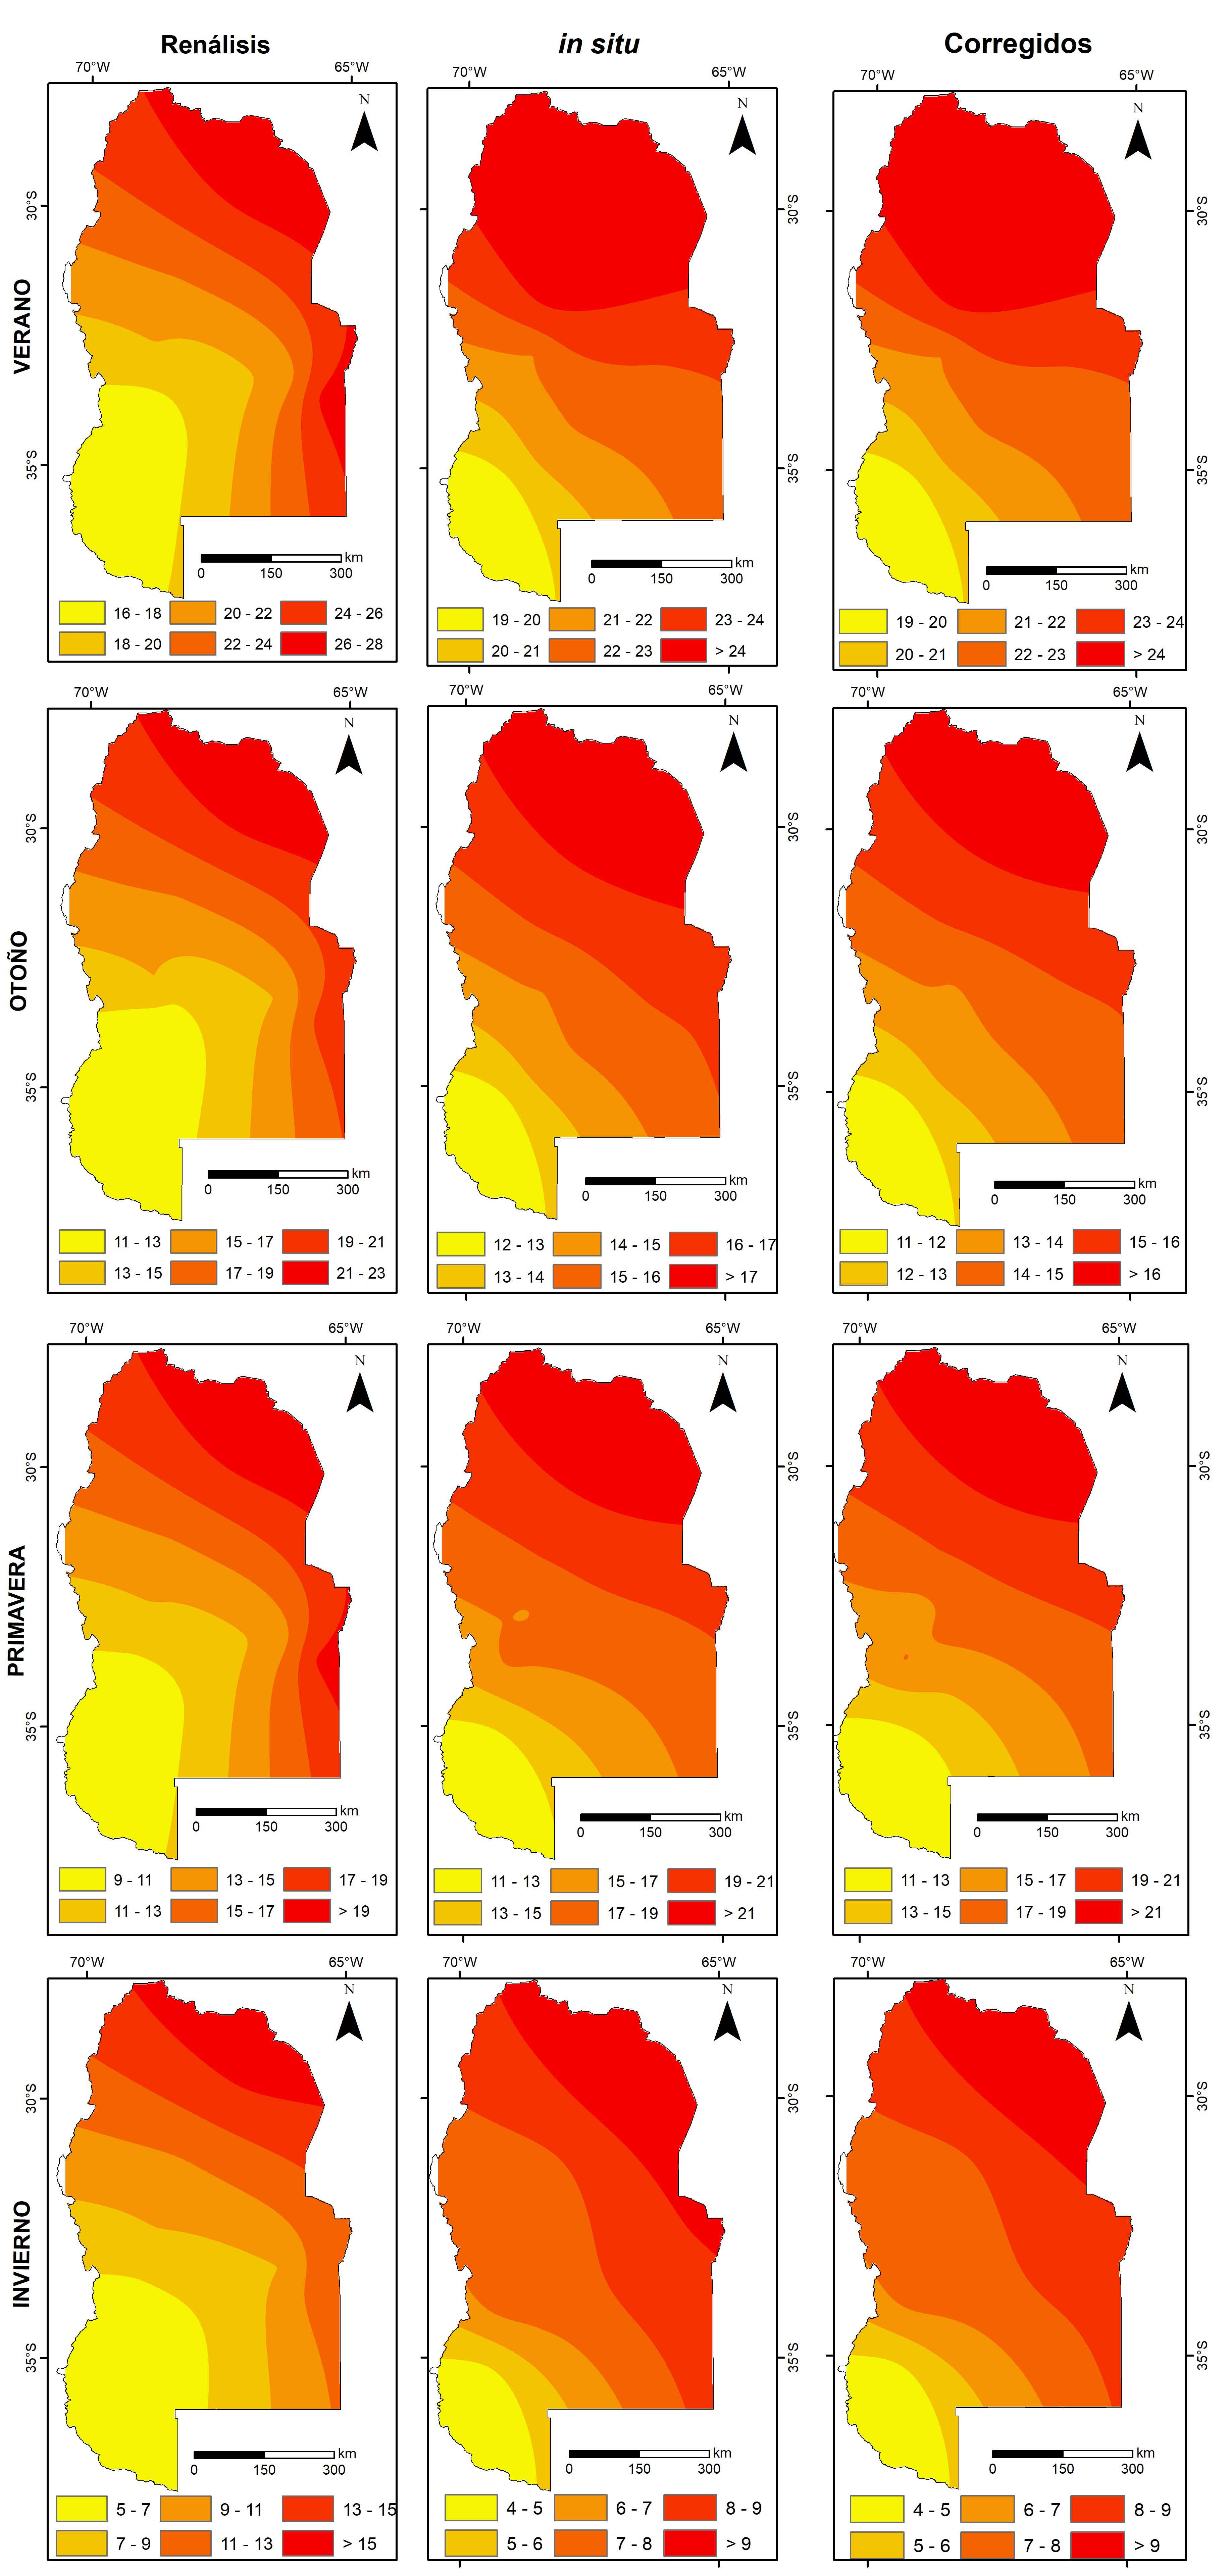 Distribución espacial de la temperatura de superficie
estacional, considerando: i. Datos del Reanálisis, ii.
Datos medidos In situ y iii. Datos corregidos.
Período de testeo (2001-2020).